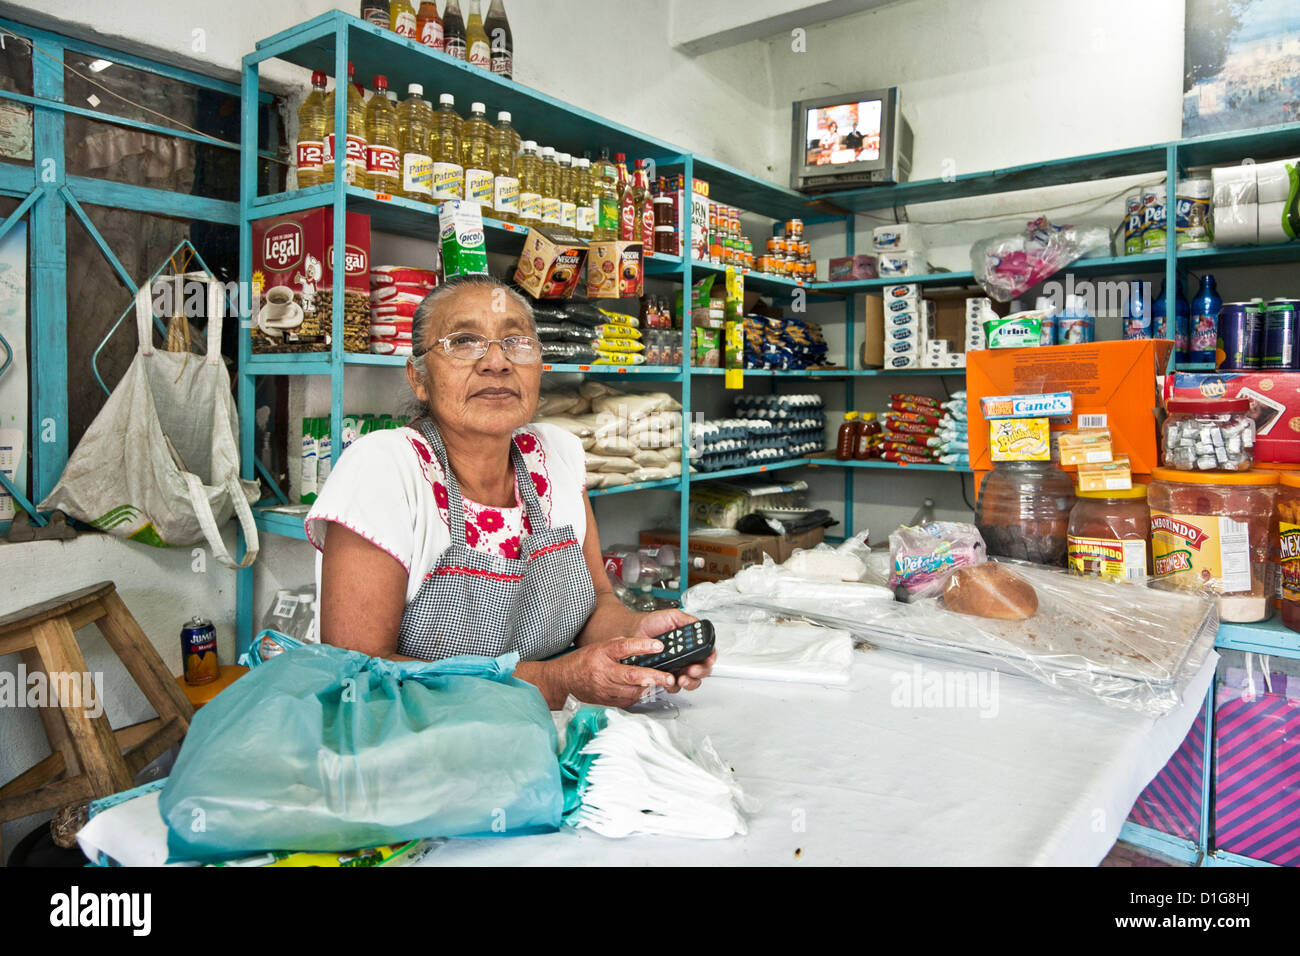 mittlere gealterte Frau Inhaber am Schalter ihrer übersichtlichen makellos Bodega Ecke Lebensmittelgeschäft Oaxaca de Juárez, Mexiko Stockfoto